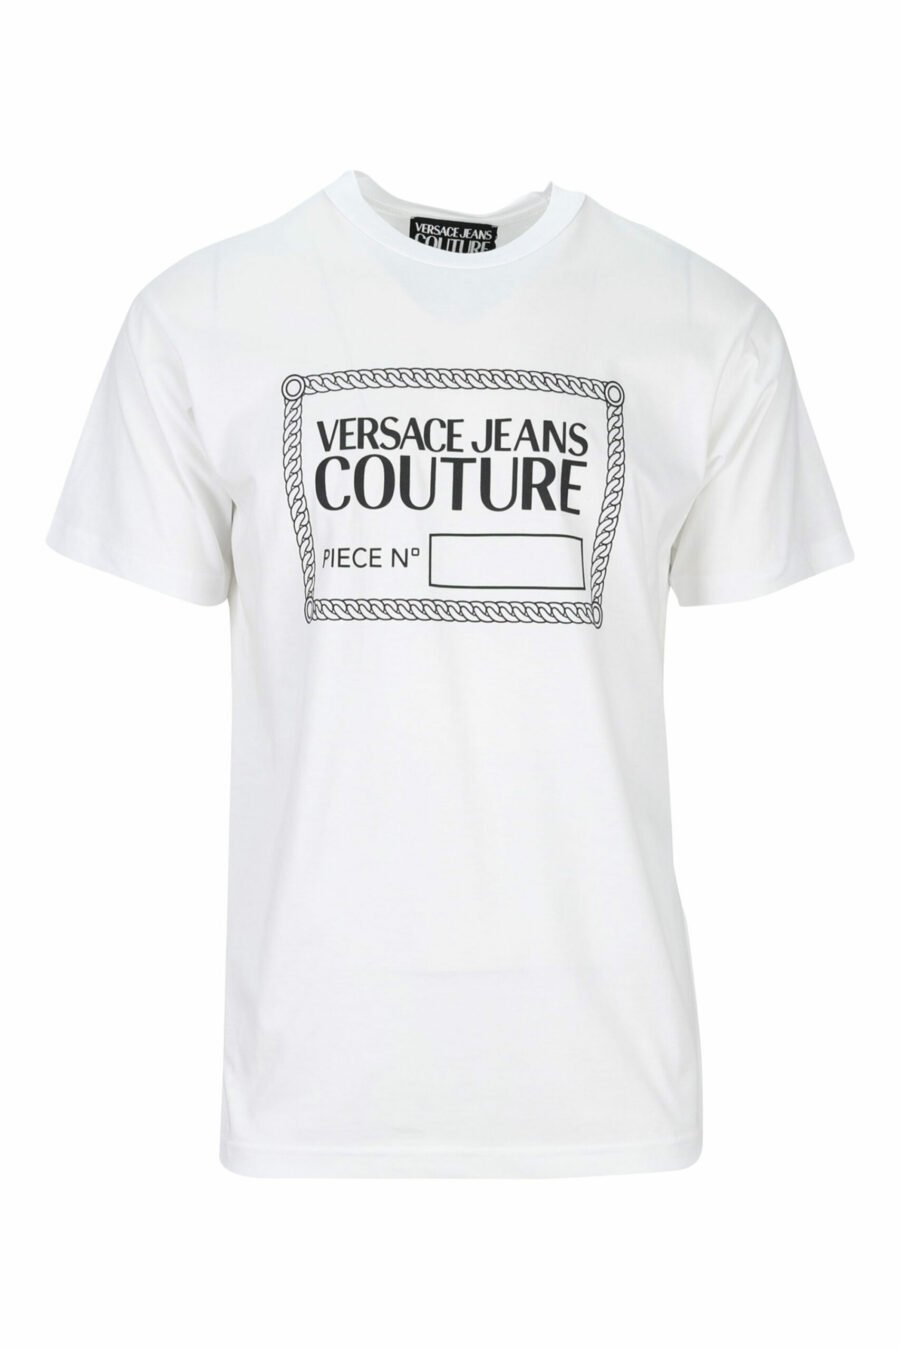 T-shirt blanc avec maxilogo noir "numéro de pièce" - 8052019468663 scaled